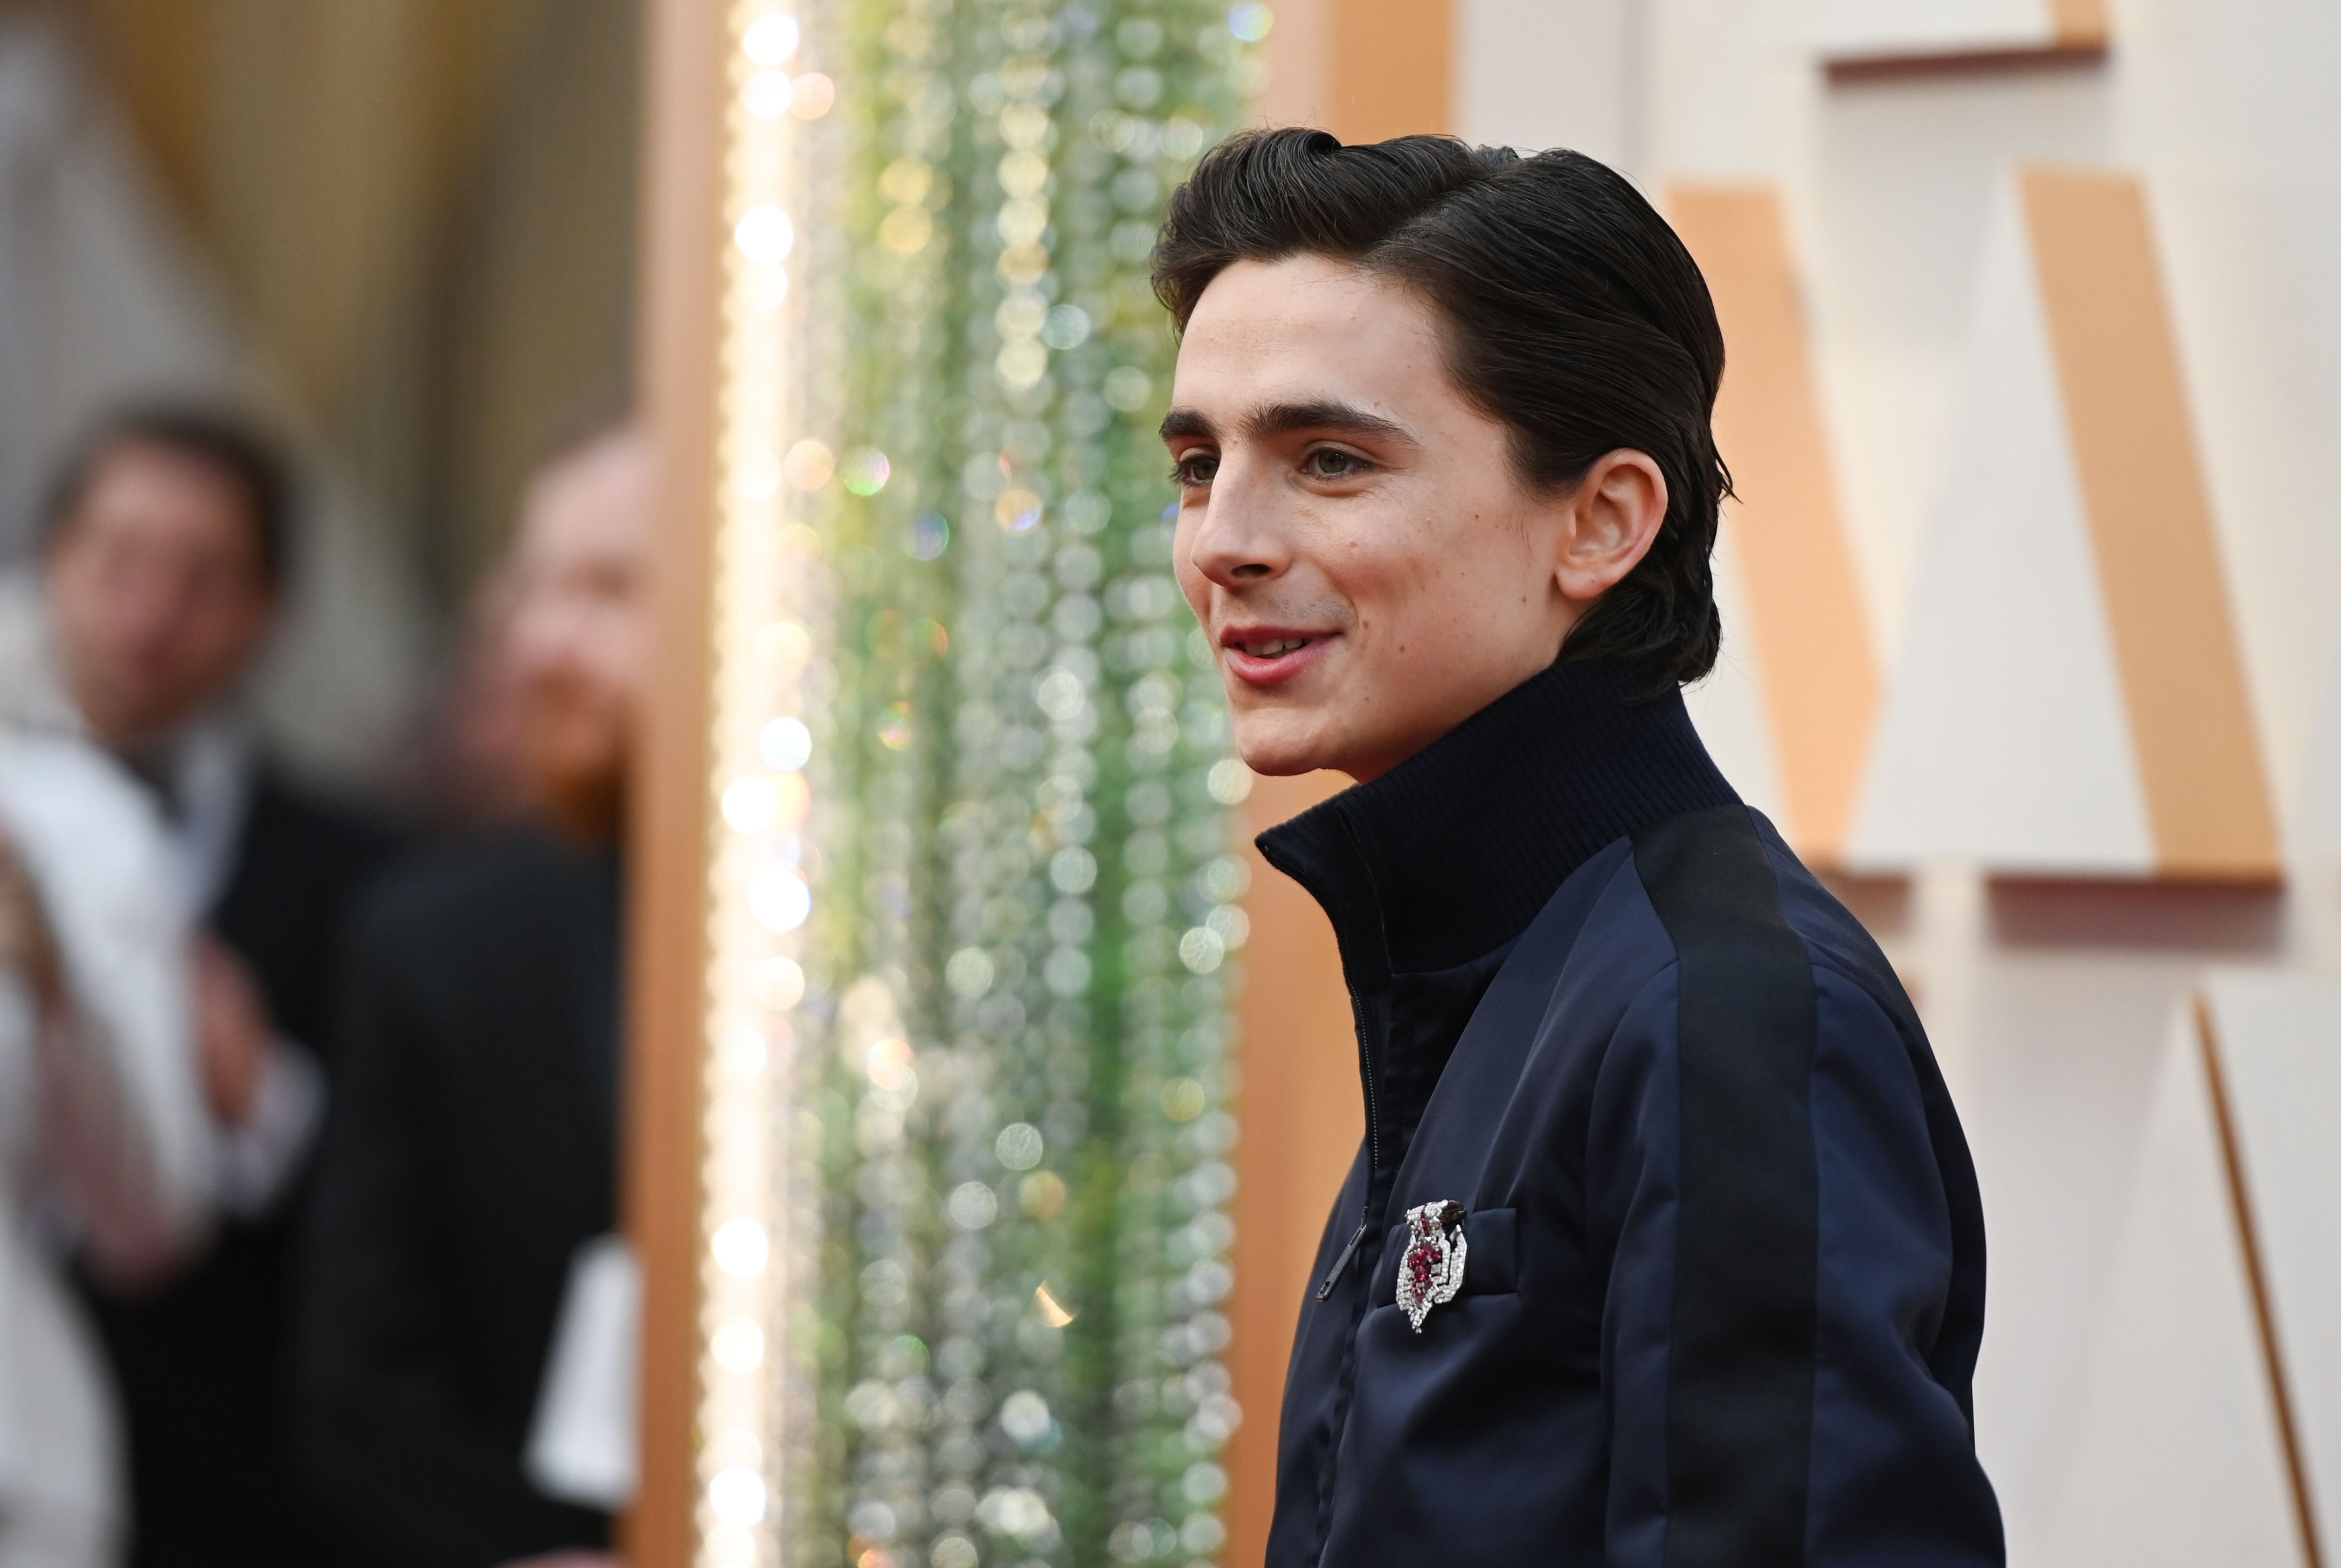 Timothée Chalamet Wears Louis Vuitton the at Oscars 2022